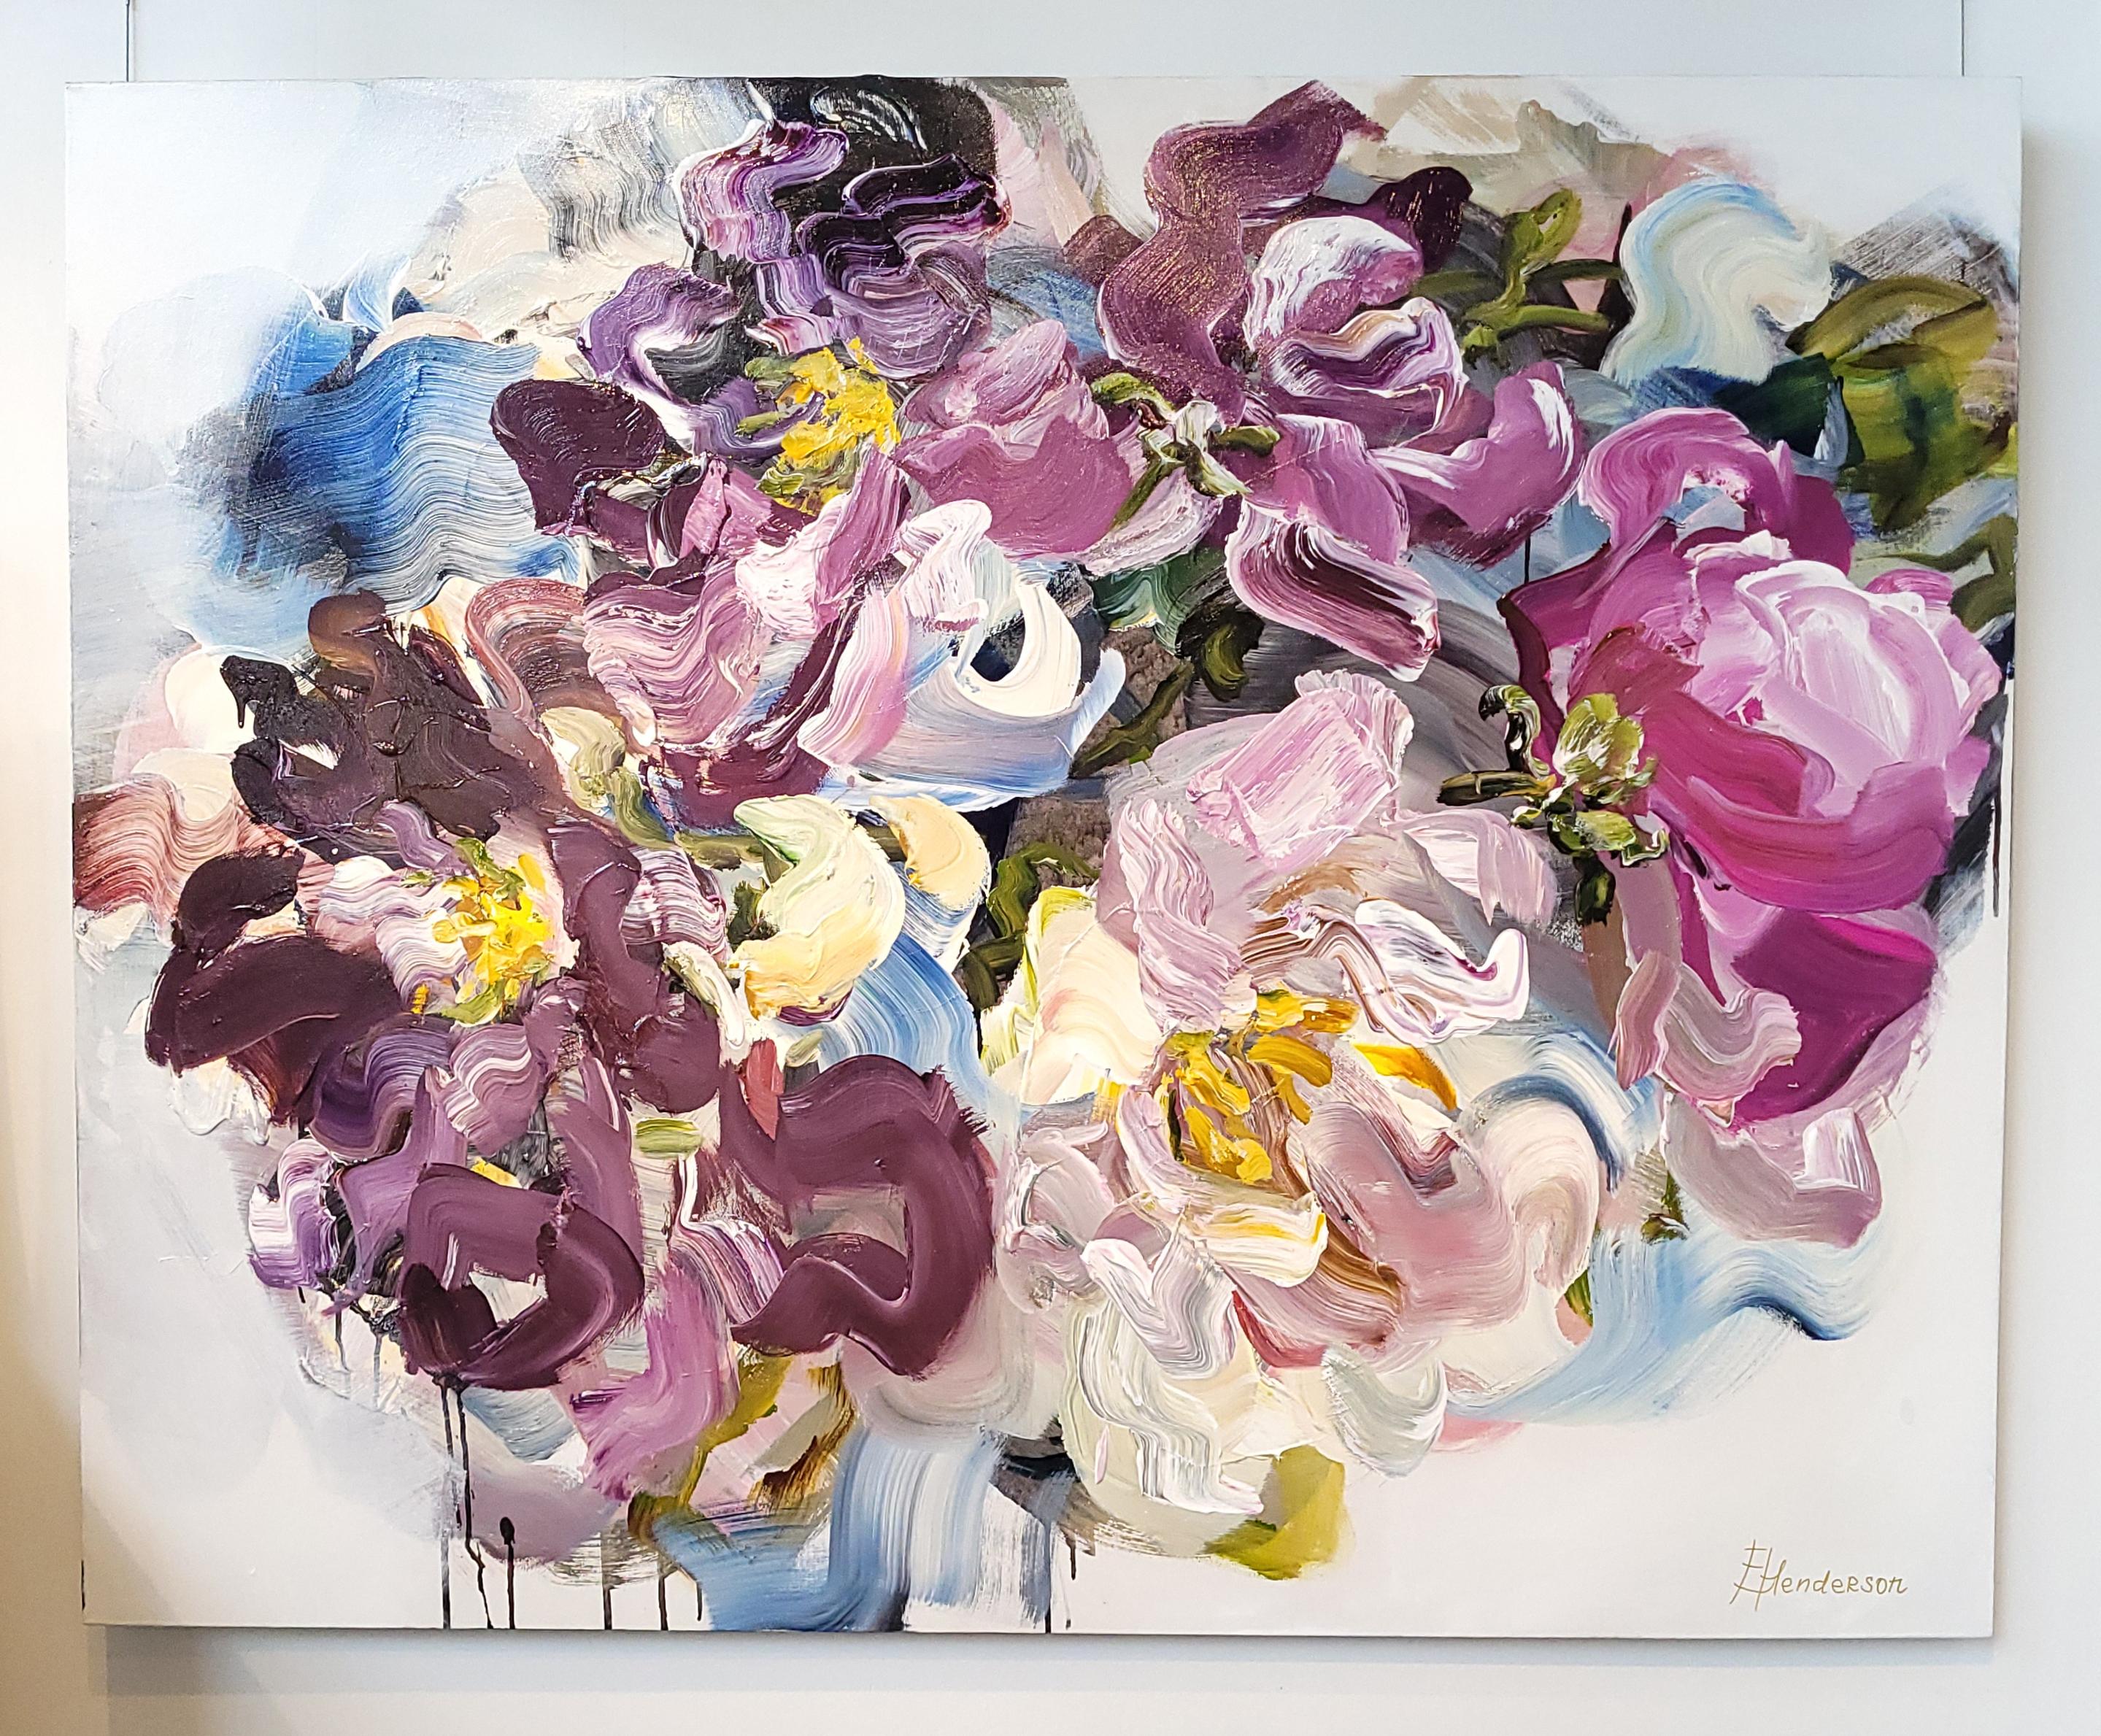 Magnifique grande acrylique florale sur toile de l'artiste canado-russe Elena Henderson. L'œuvre d'art mesure 48